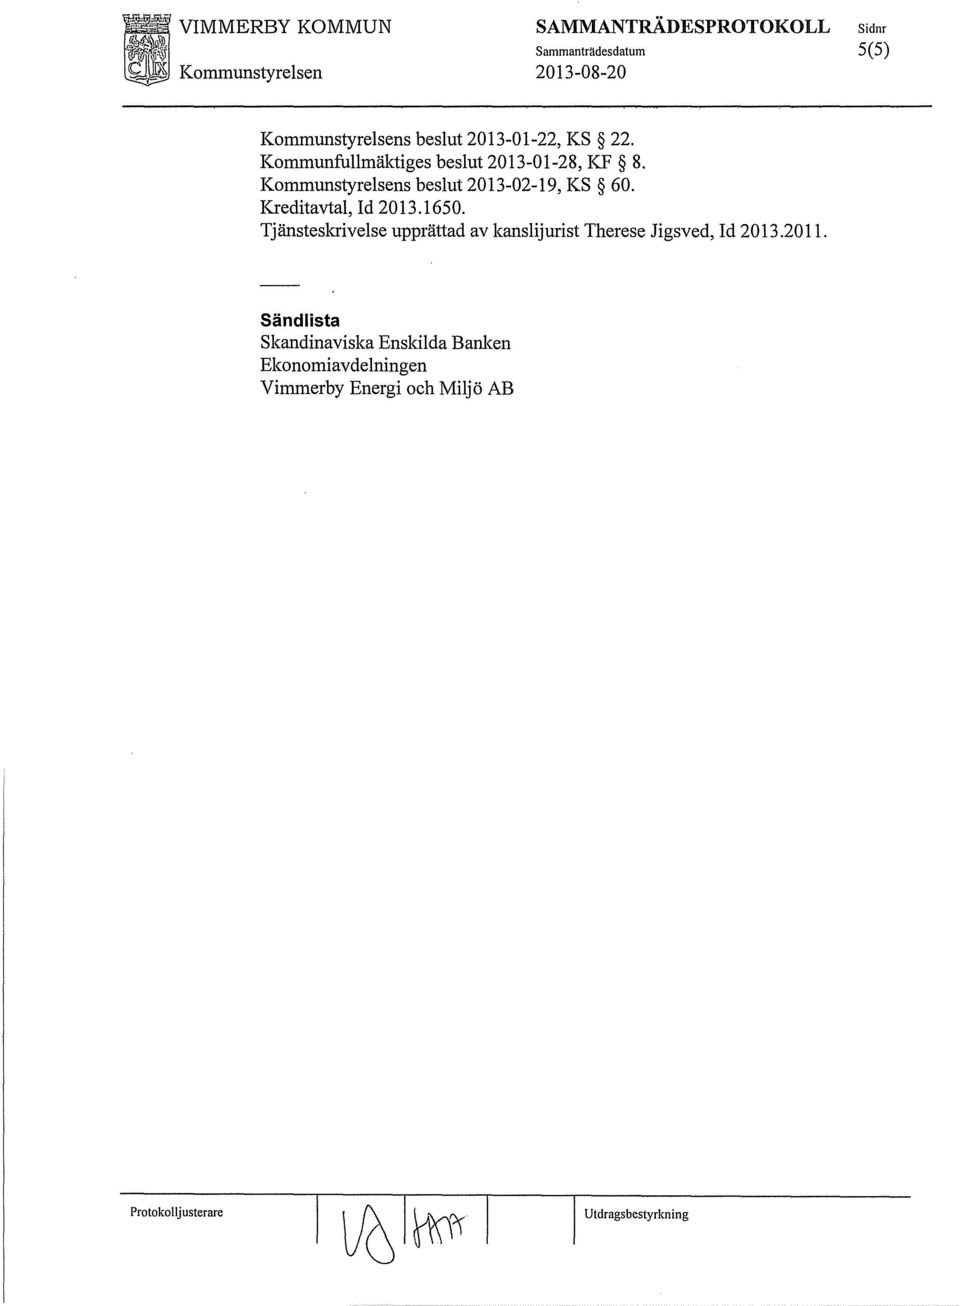 Kommunstyrelsens beslut 2013-02-19, KS 60. Kreditavtal, Id 2013.1650.